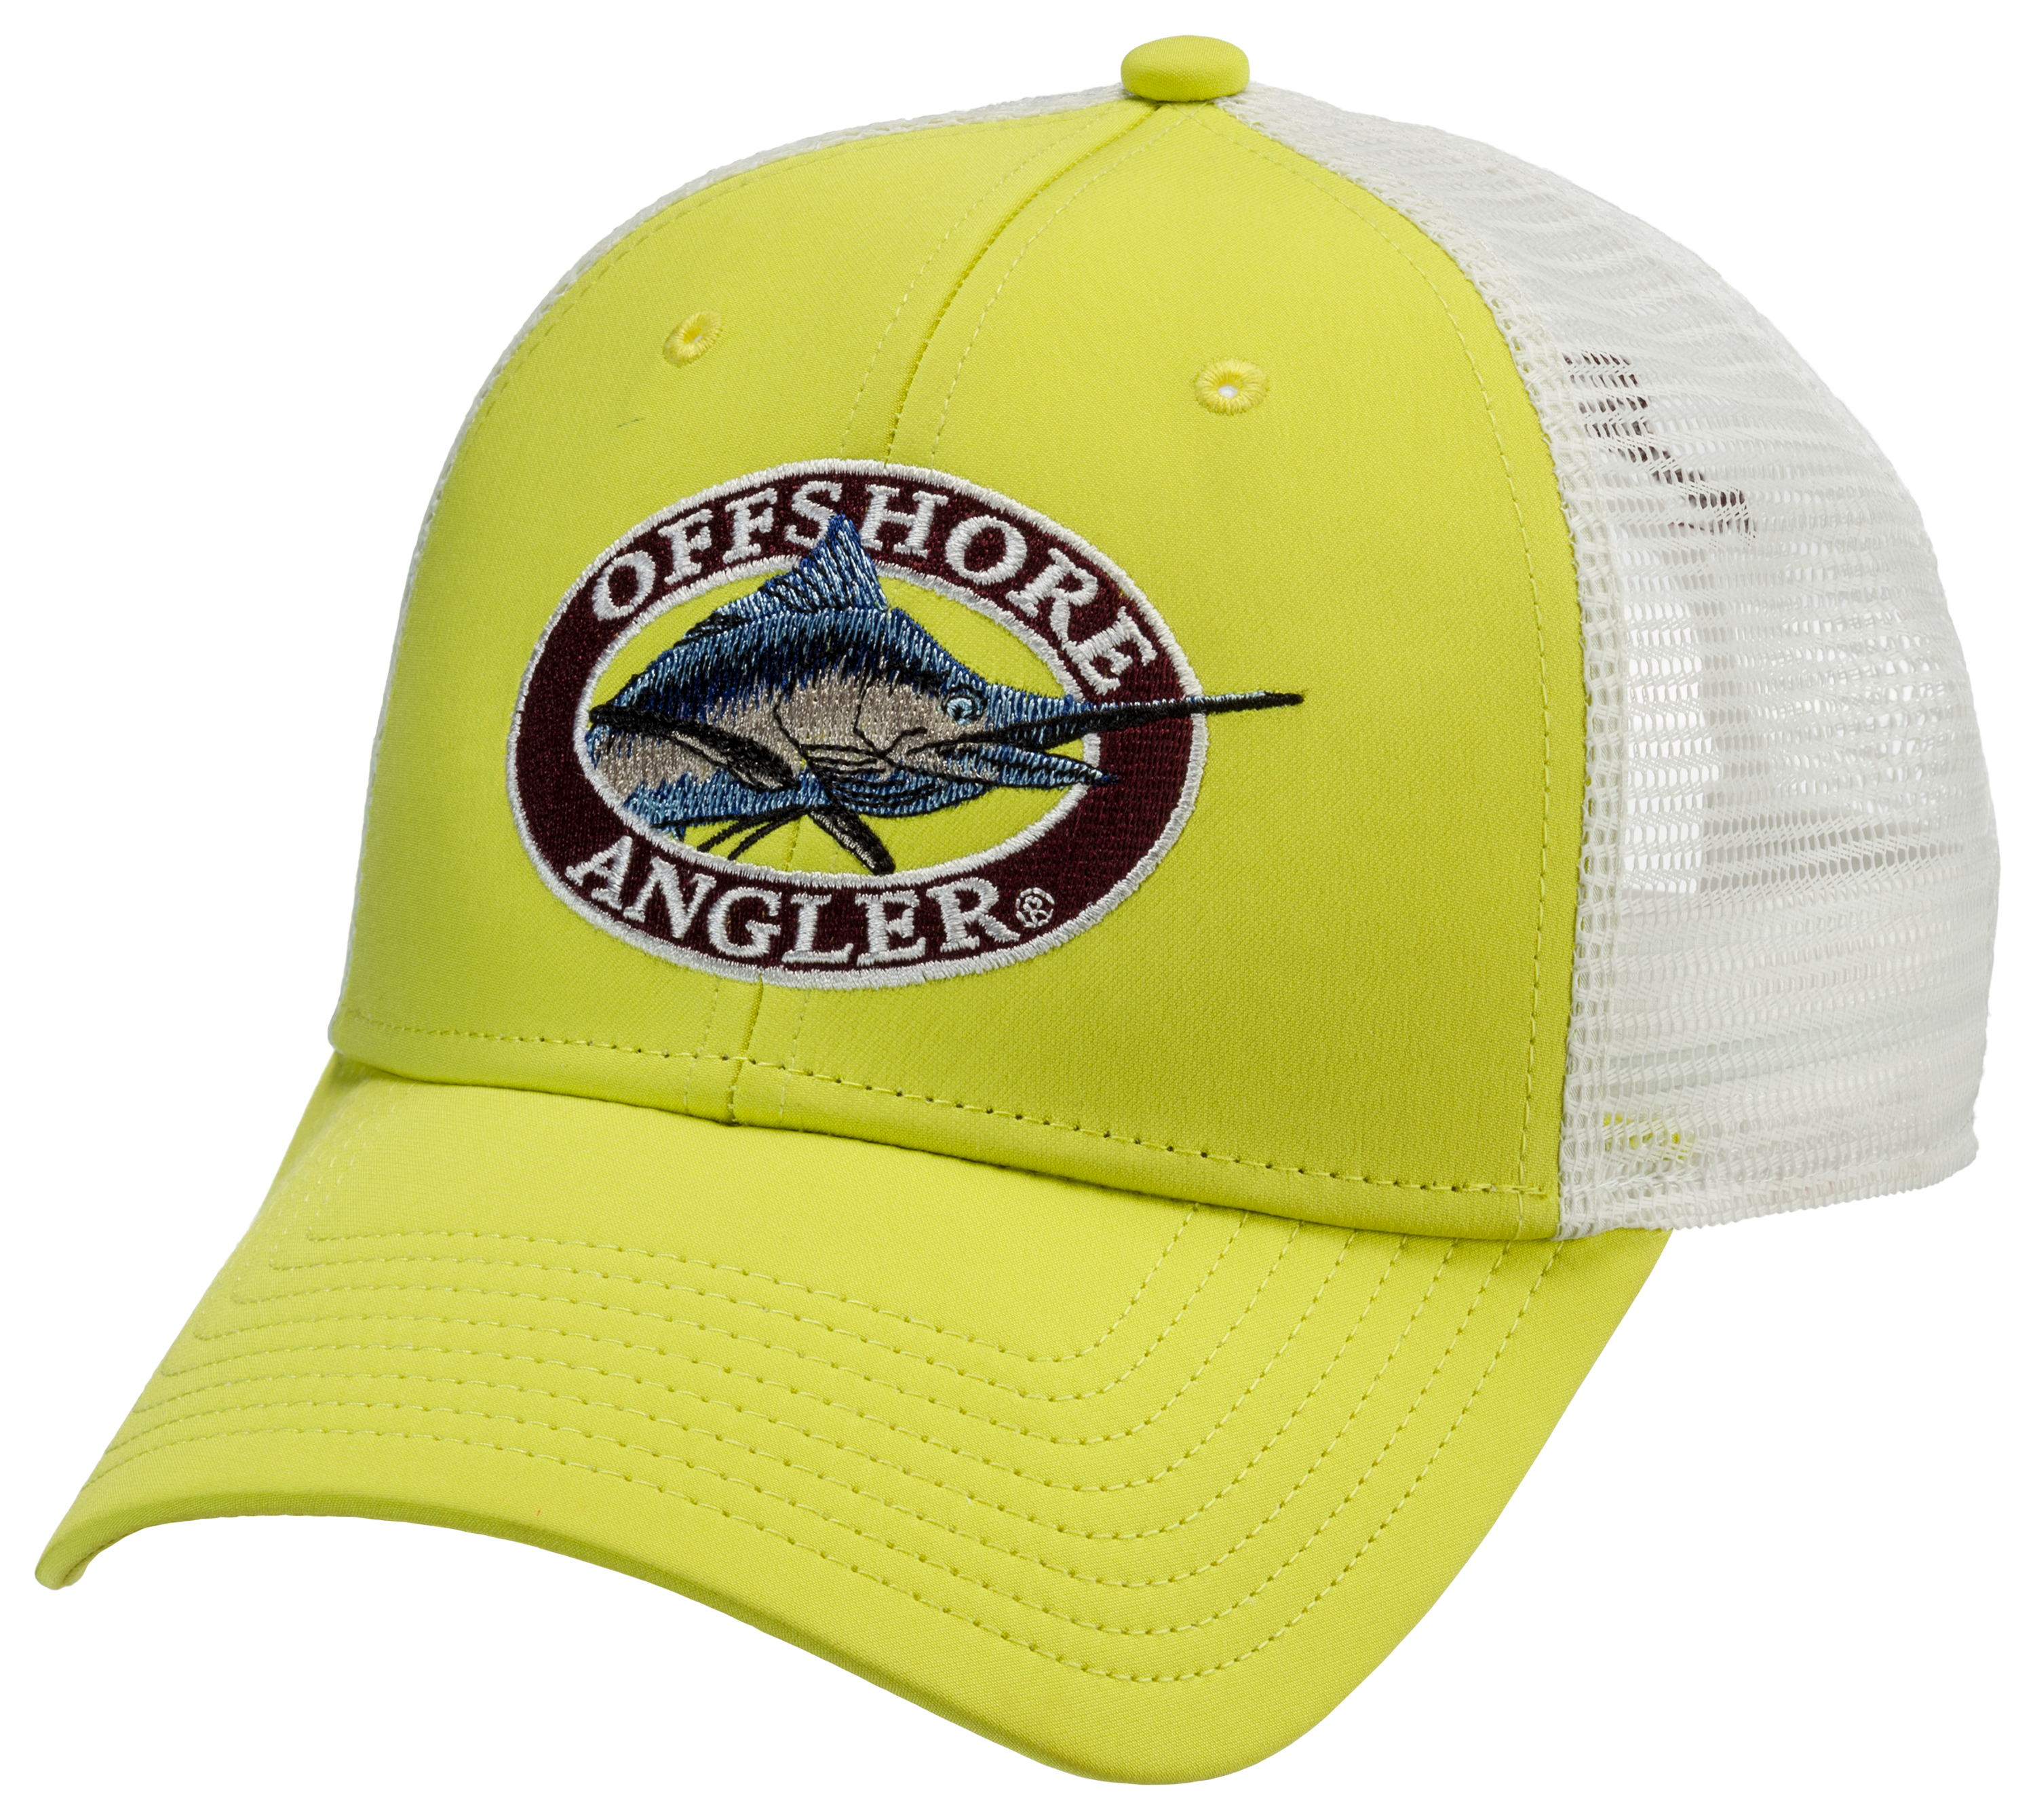 Offshore Angler Mesh Back Performance Cap